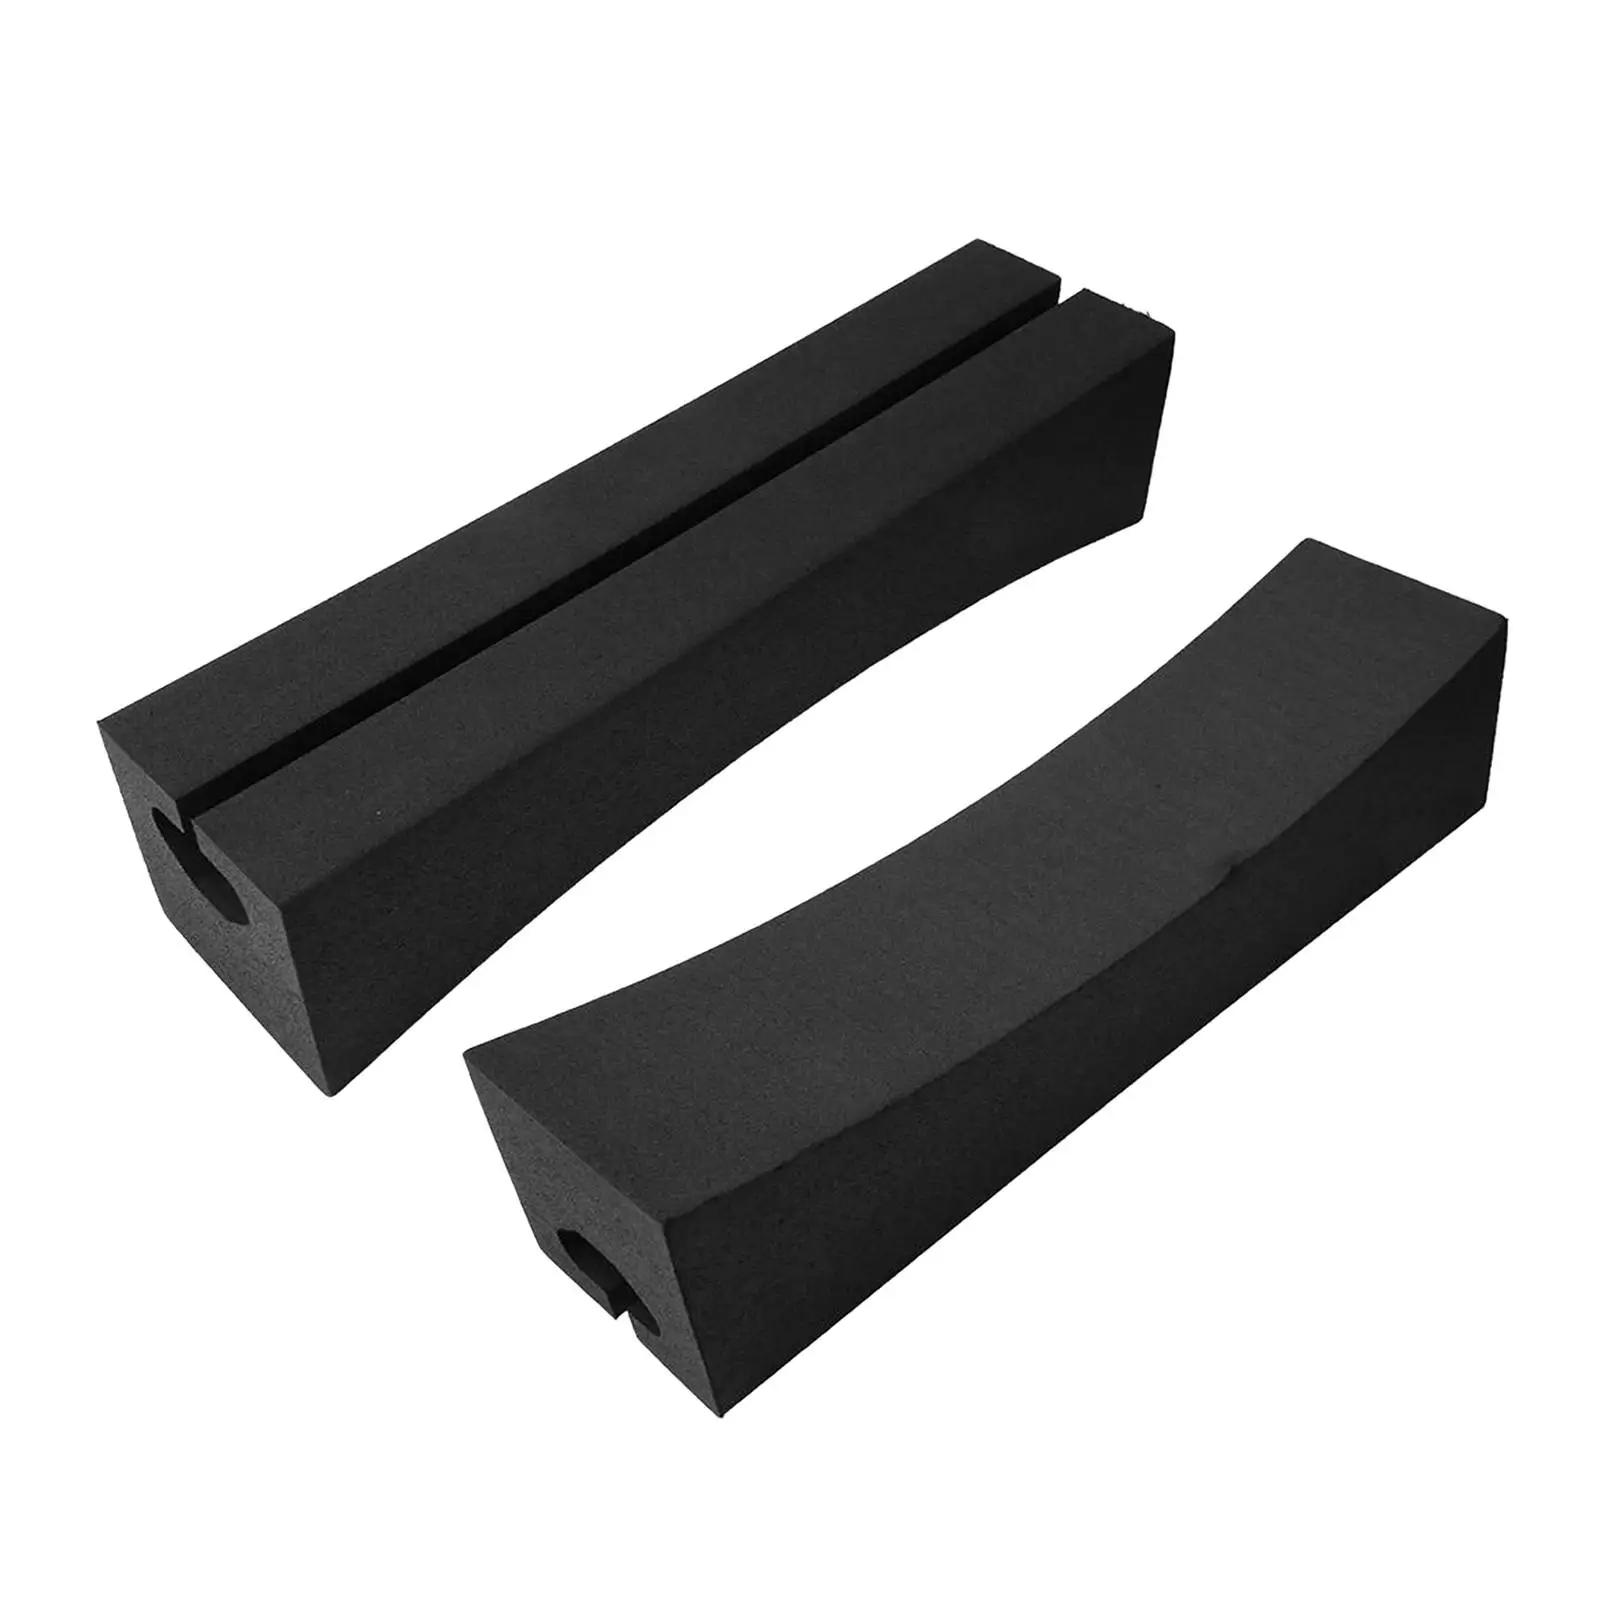 1 Set Car Roof Rack EVA Standard Paddle Soft Black for Traveling Sports Car